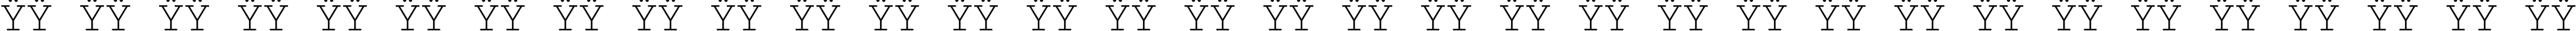 Пример написания русского алфавита шрифтом Courier